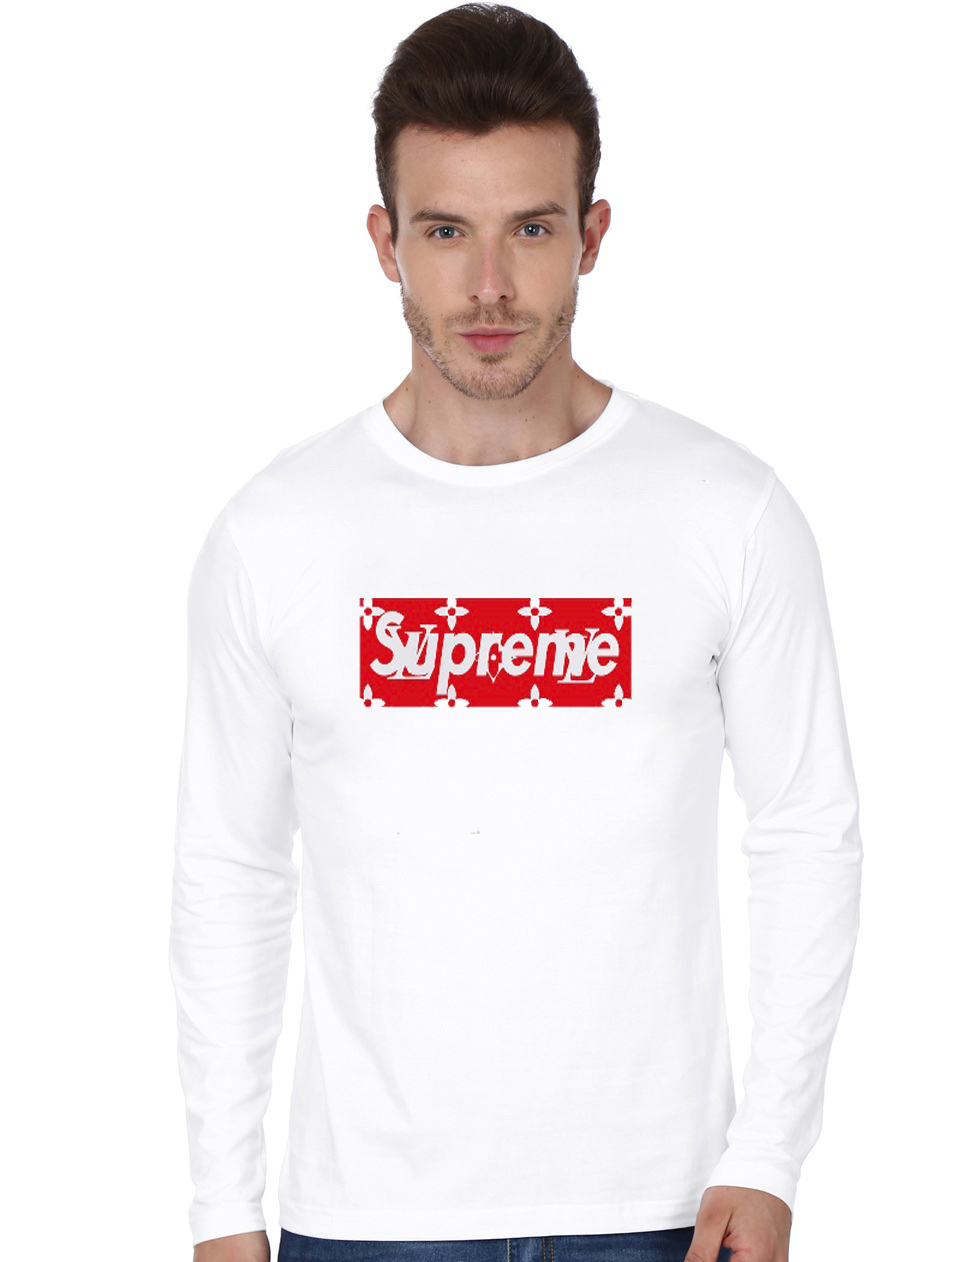 supreme lv tshirt